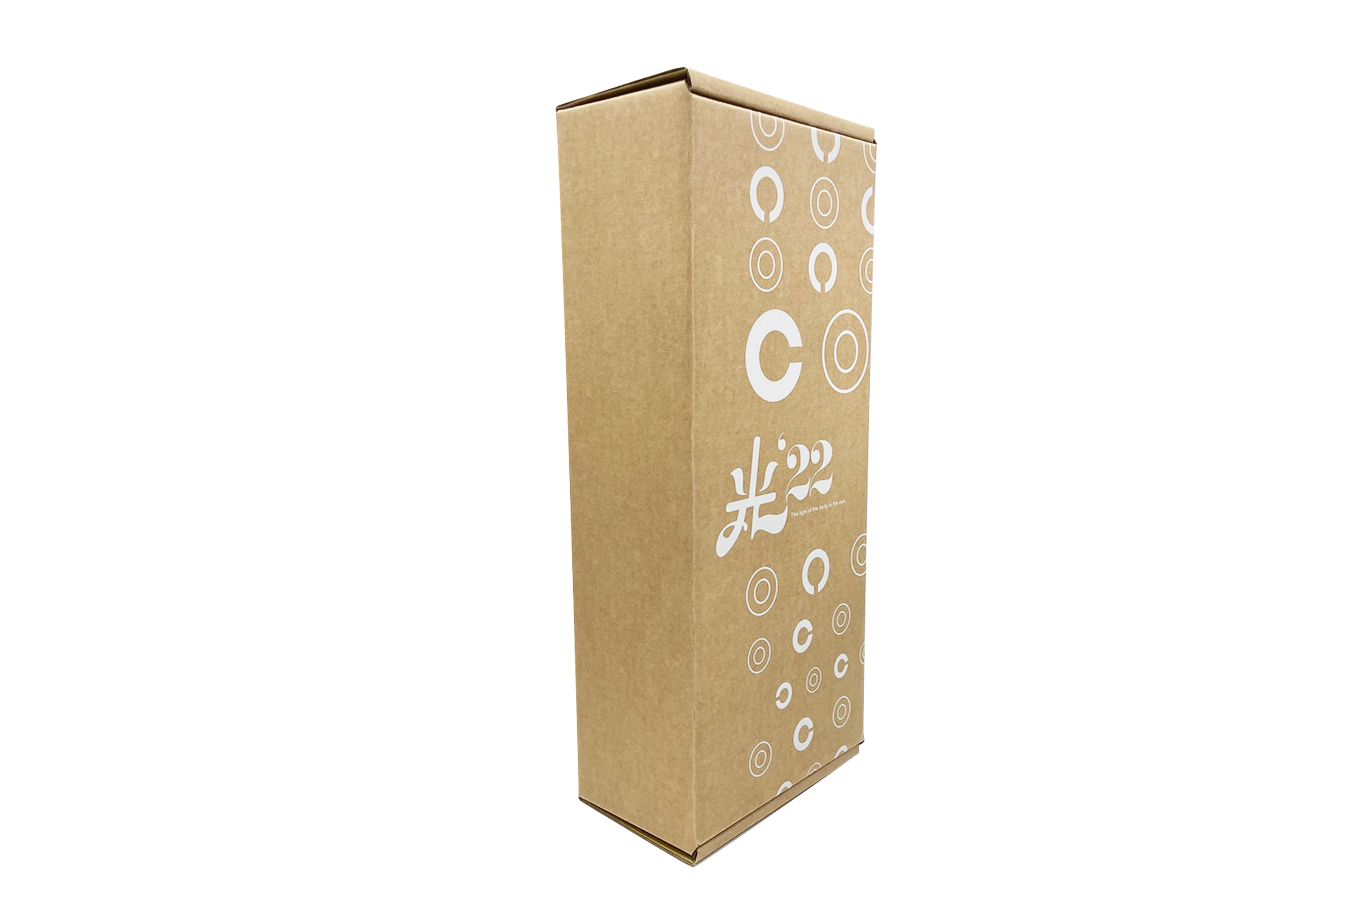 Cajas de papel Kraft productos alimenticios-Frente de caja de papel Kraft para productos | Venta al por mayor Diseño y fabricación creativos de cajas de embalaje de plástico y papel